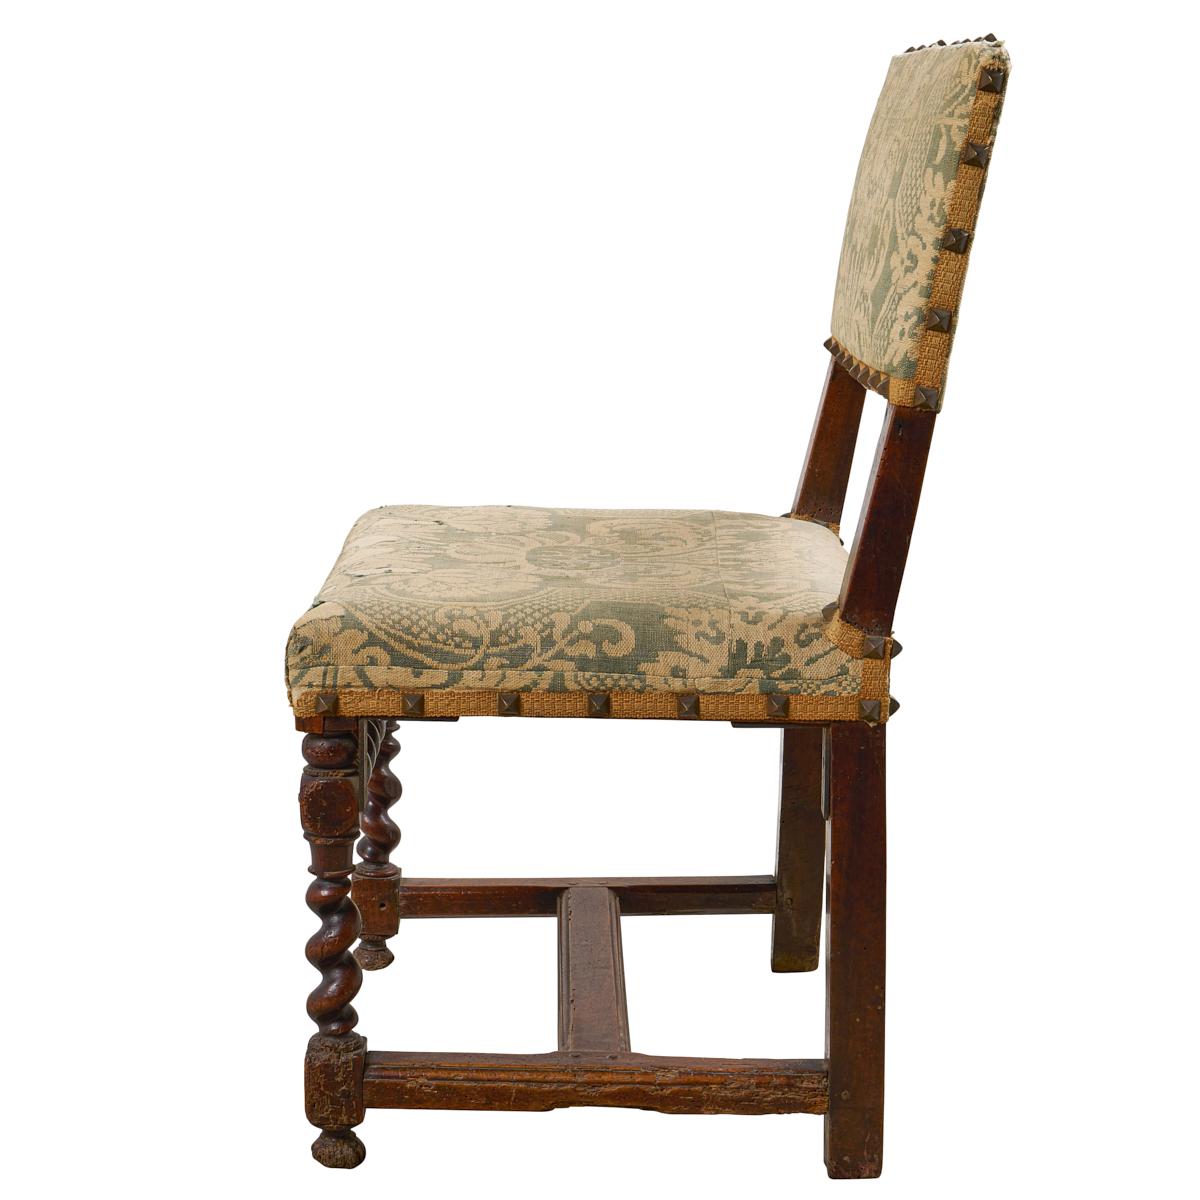 Découvertes en France, ces chaises de salon du XVIIIe siècle se distinguent par leurs magnifiques cadres sculptés, leur élégante tapisserie en damas et leurs garnitures de tête de clou en forme de pyramide. Cette paire passe-partout est utile,